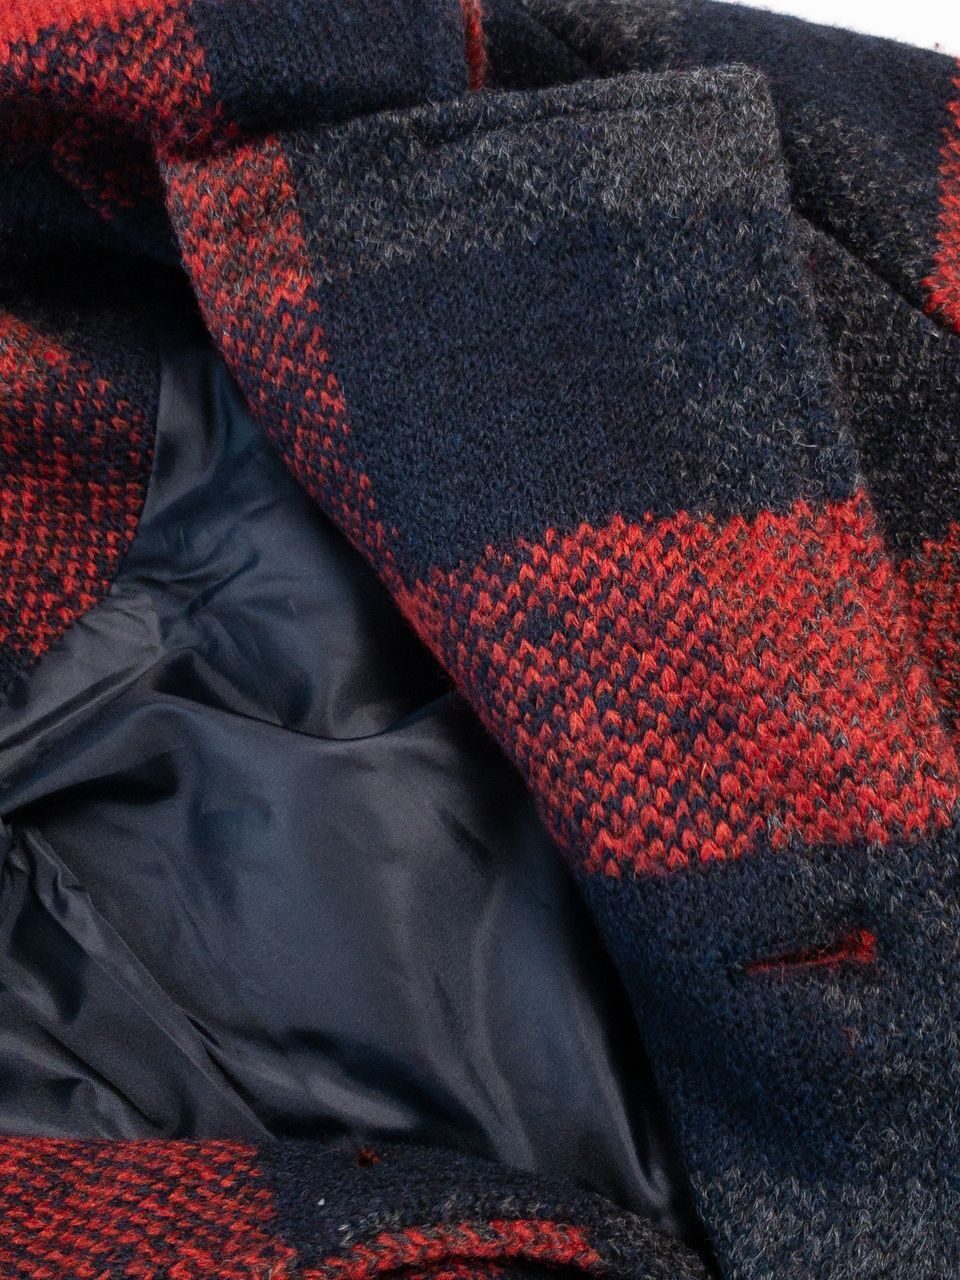 Пальто для мальчика с примесью шерсти на подкладке капюшон отстегивается цвет красный/черный/клетка на рост 146 см 10-11 лет OVS